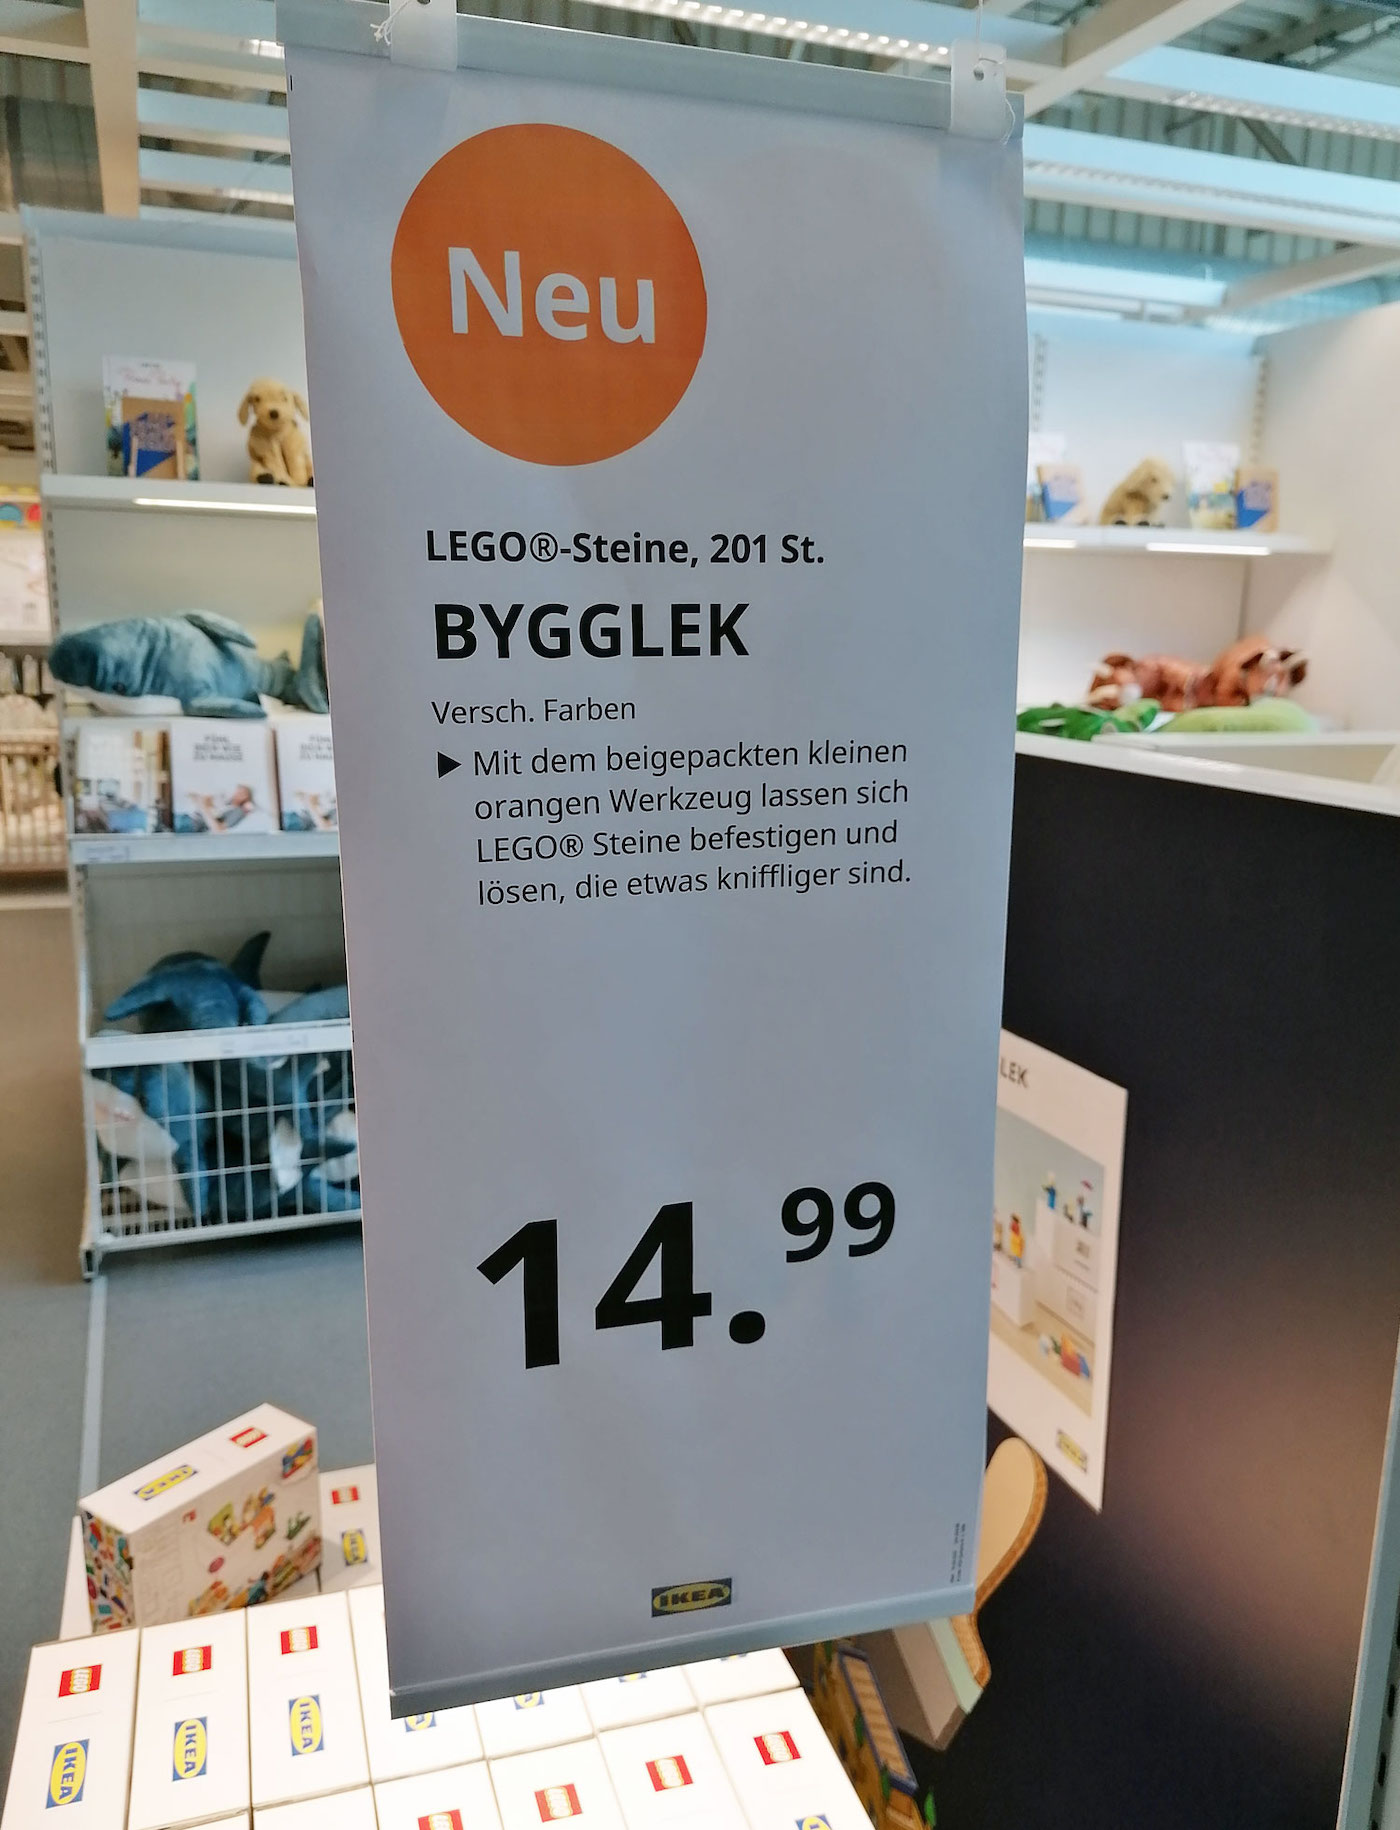 IKEA et Lego créent des meubles personnalisables avec des petites briques